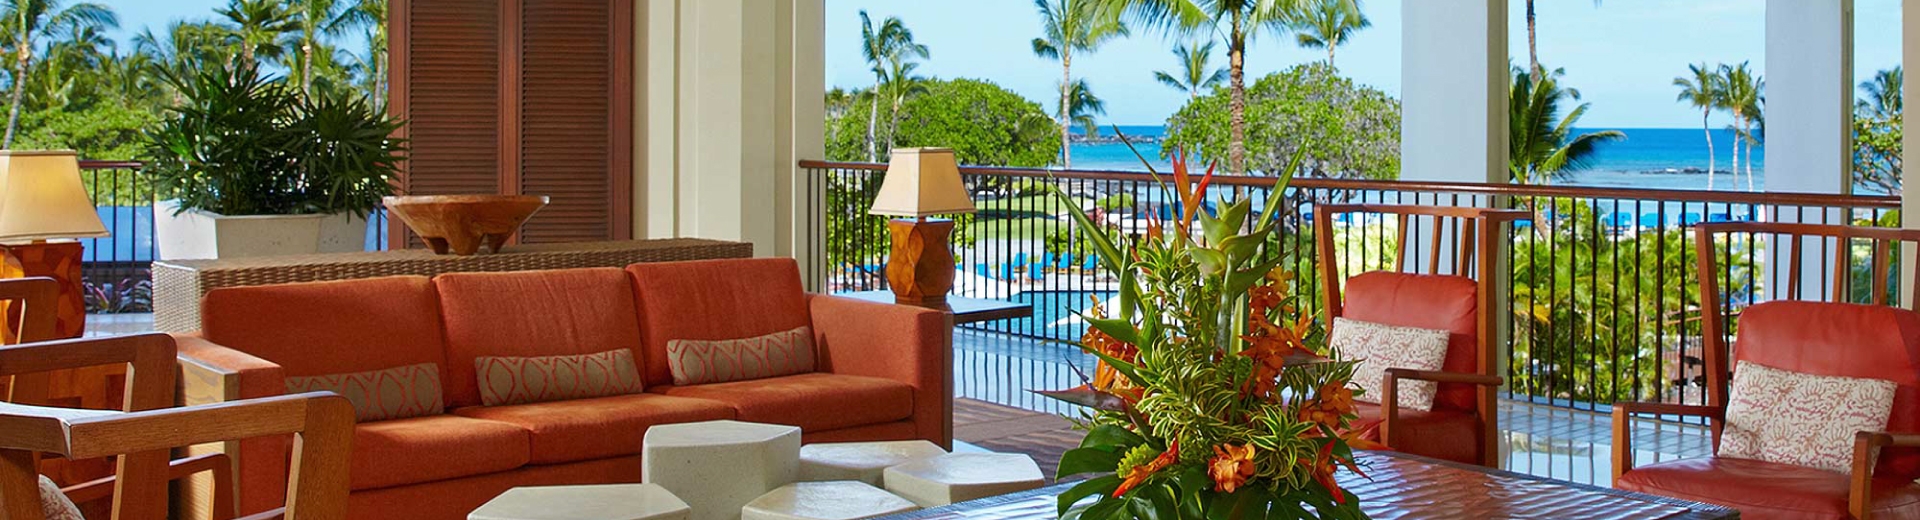 夏威夷旅遊飯店推薦-摩納拉尼海灘渡假村